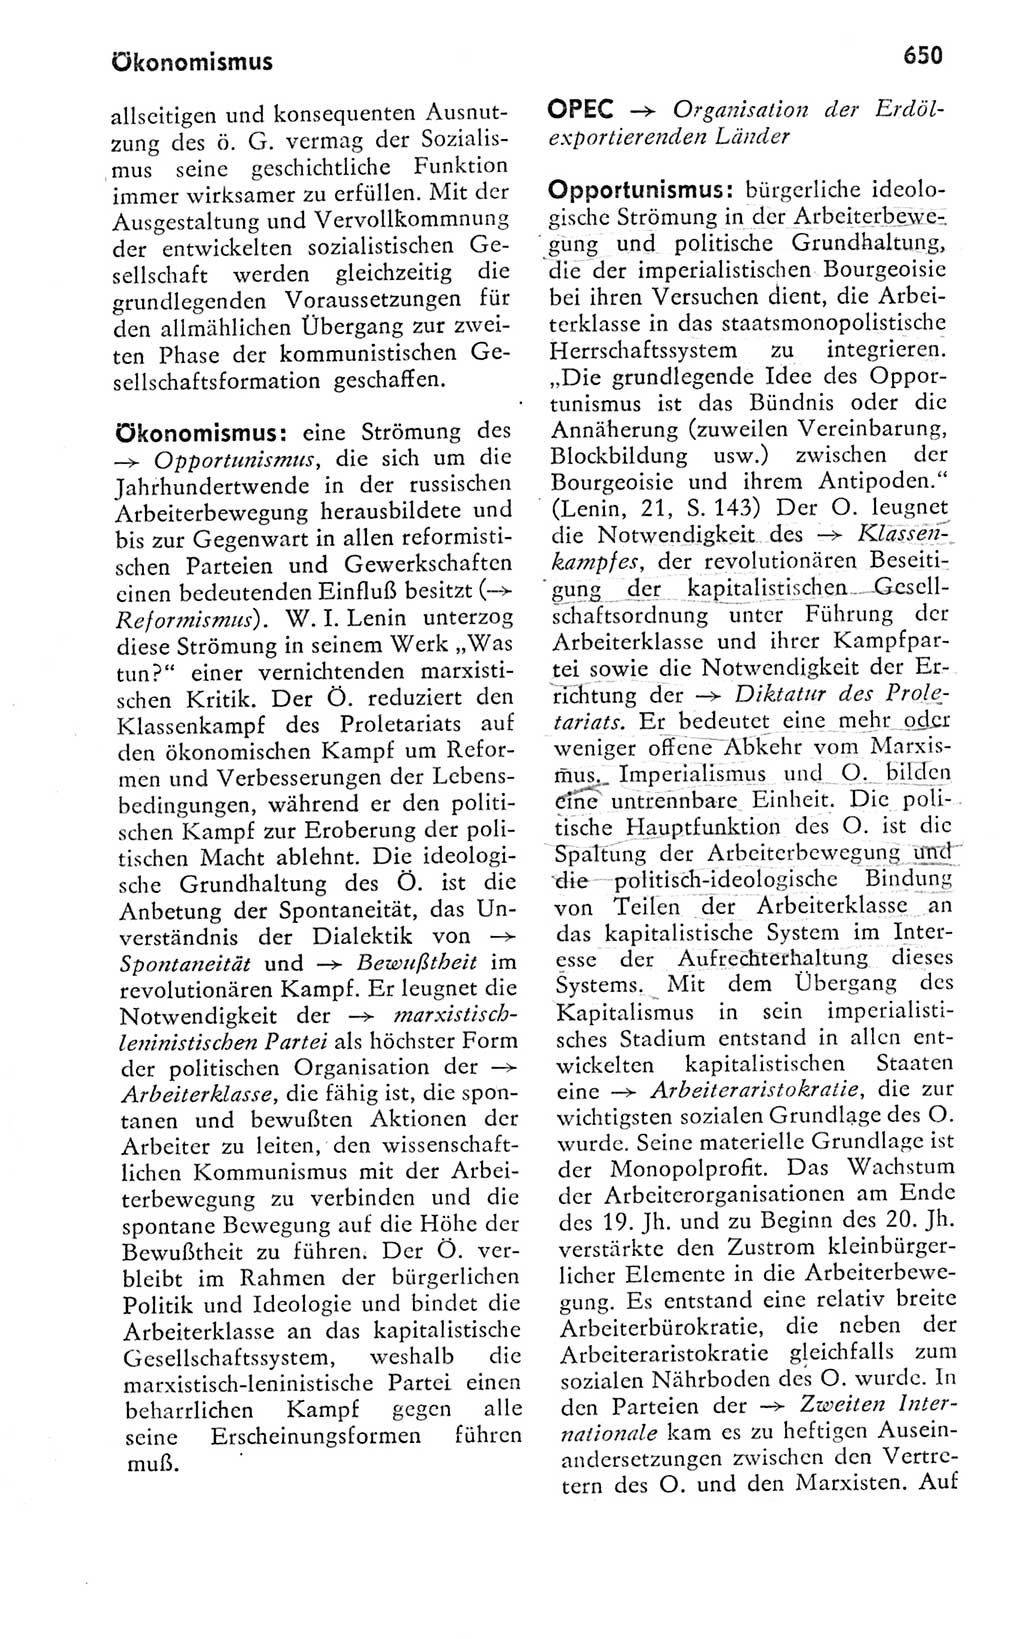 Kleines politisches Wörterbuch [Deutsche Demokratische Republik (DDR)] 1978, Seite 650 (Kl. pol. Wb. DDR 1978, S. 650)